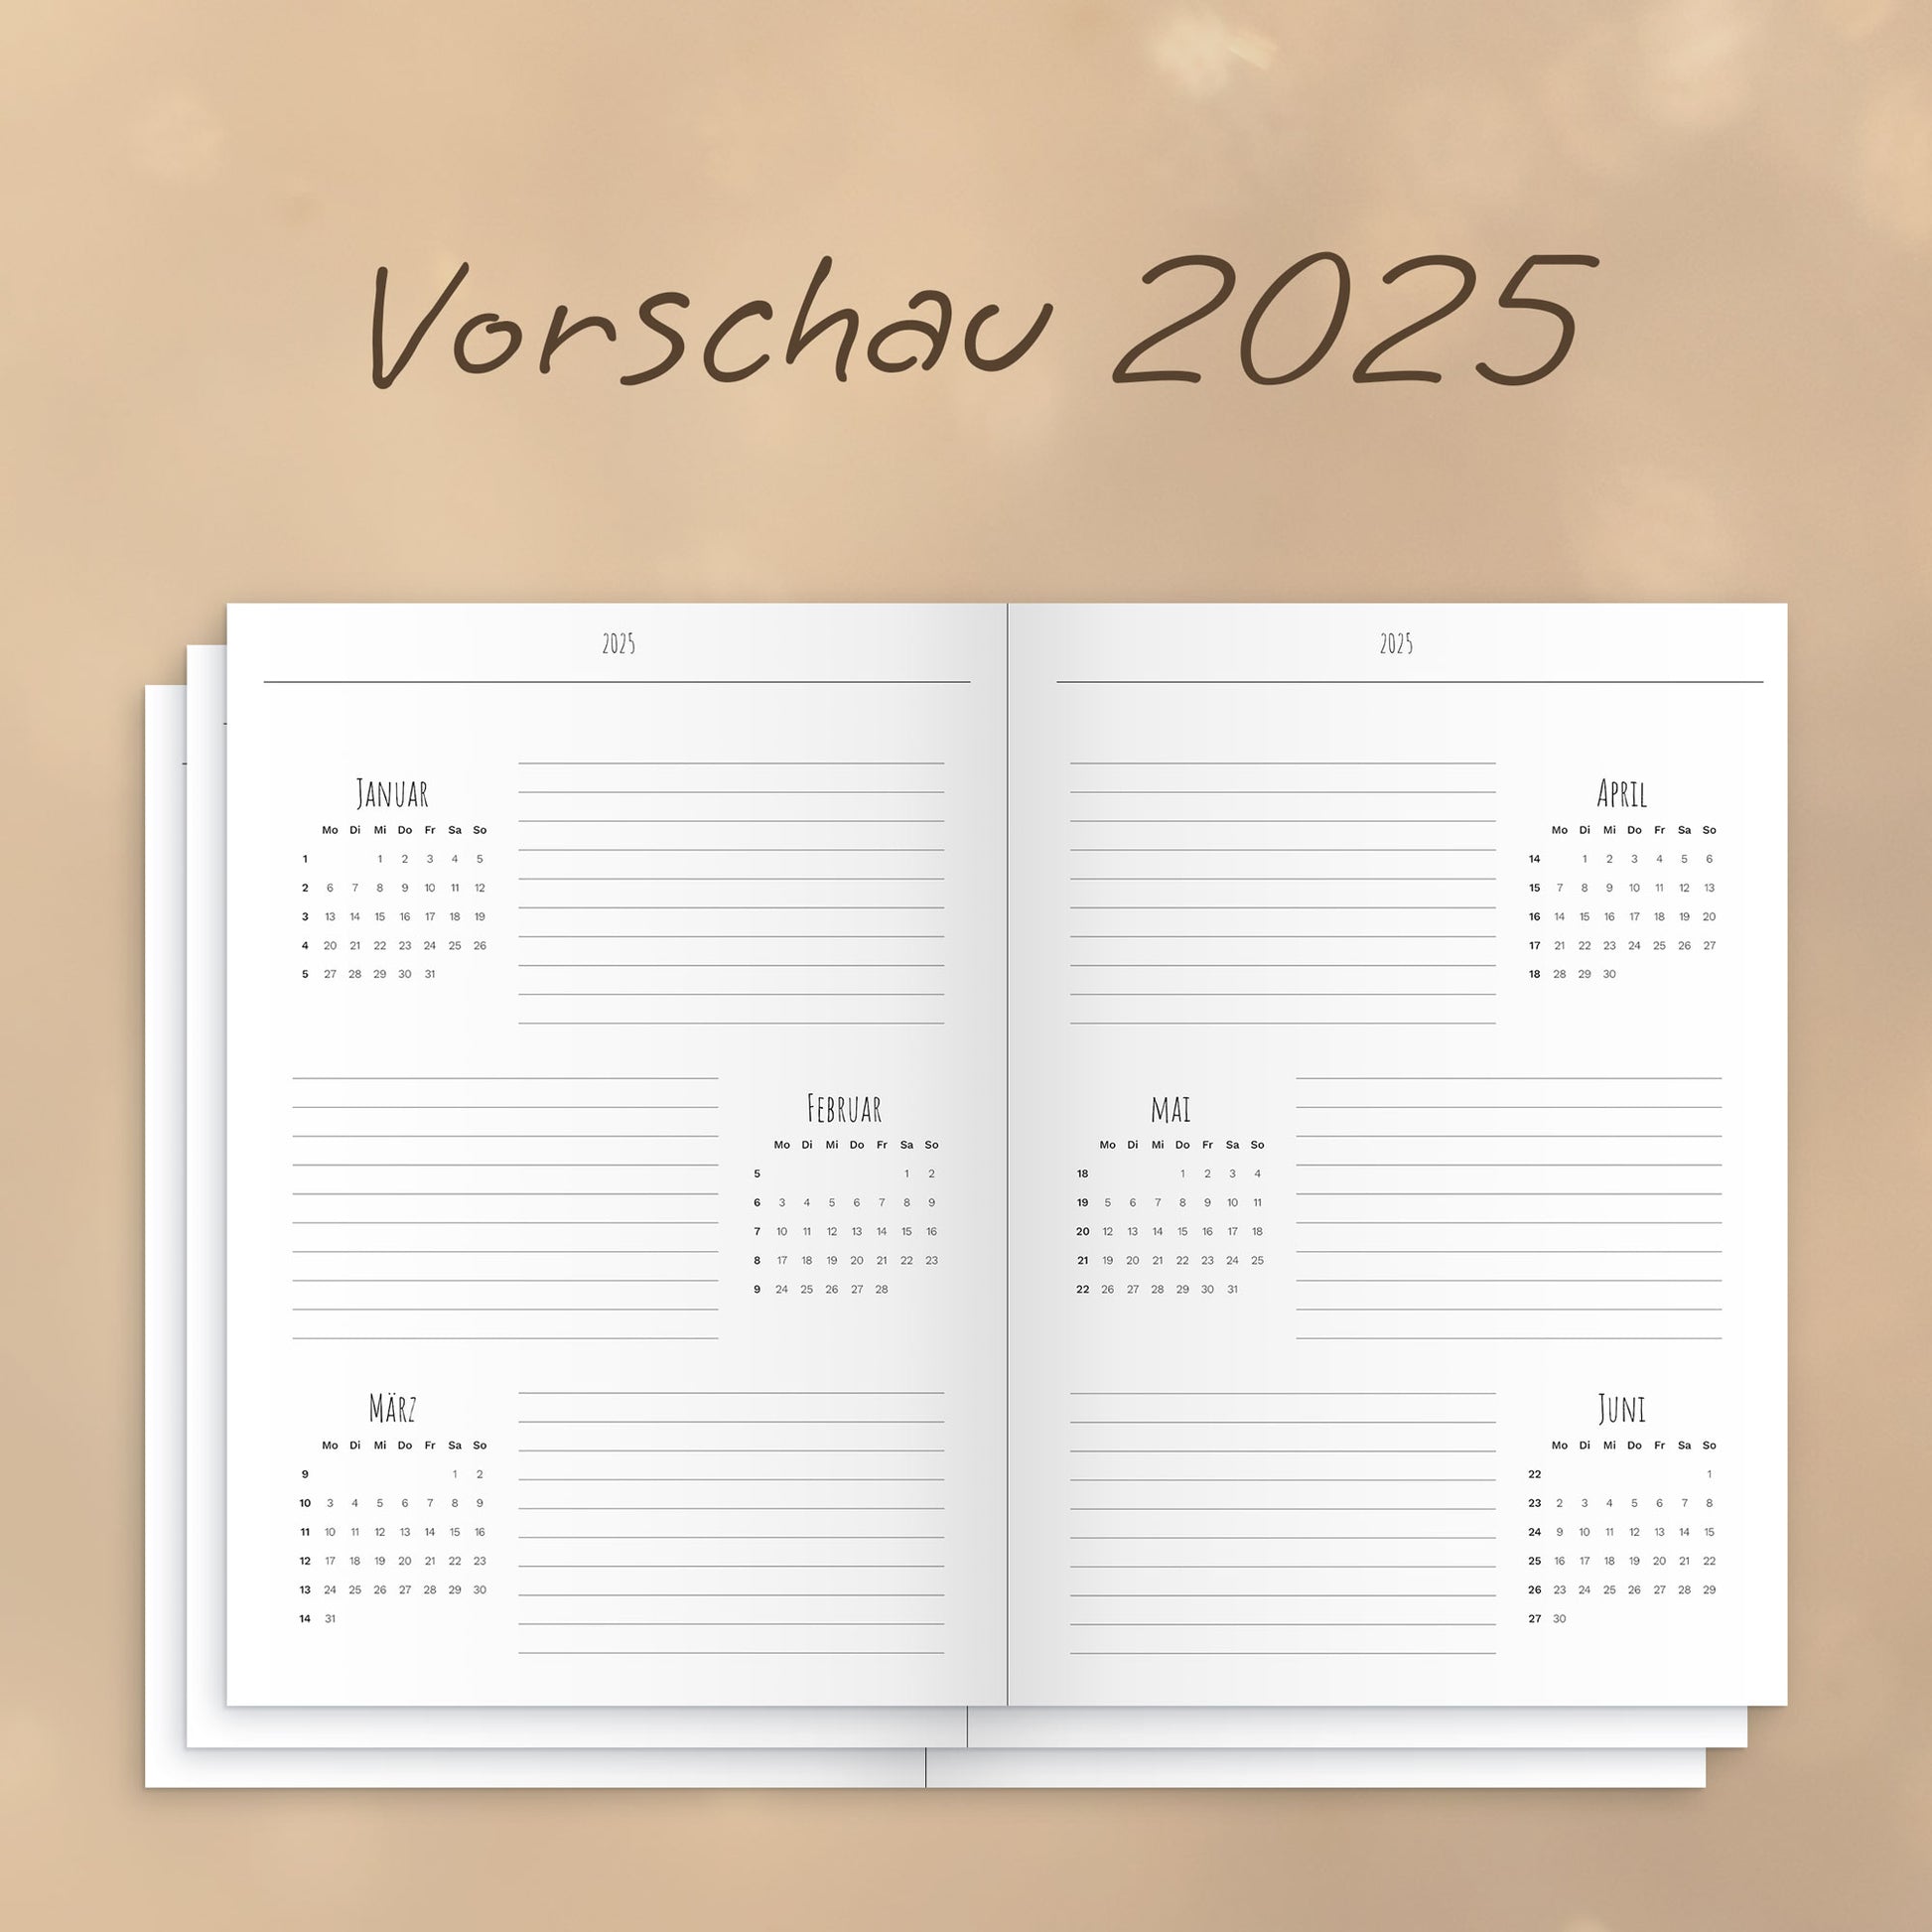 Vorschau für das Jahr 2025 als Einblick in den Jahresplaner "2024 gibt's noch mehr" von marly books in Kooperation mit Theresa Sophie